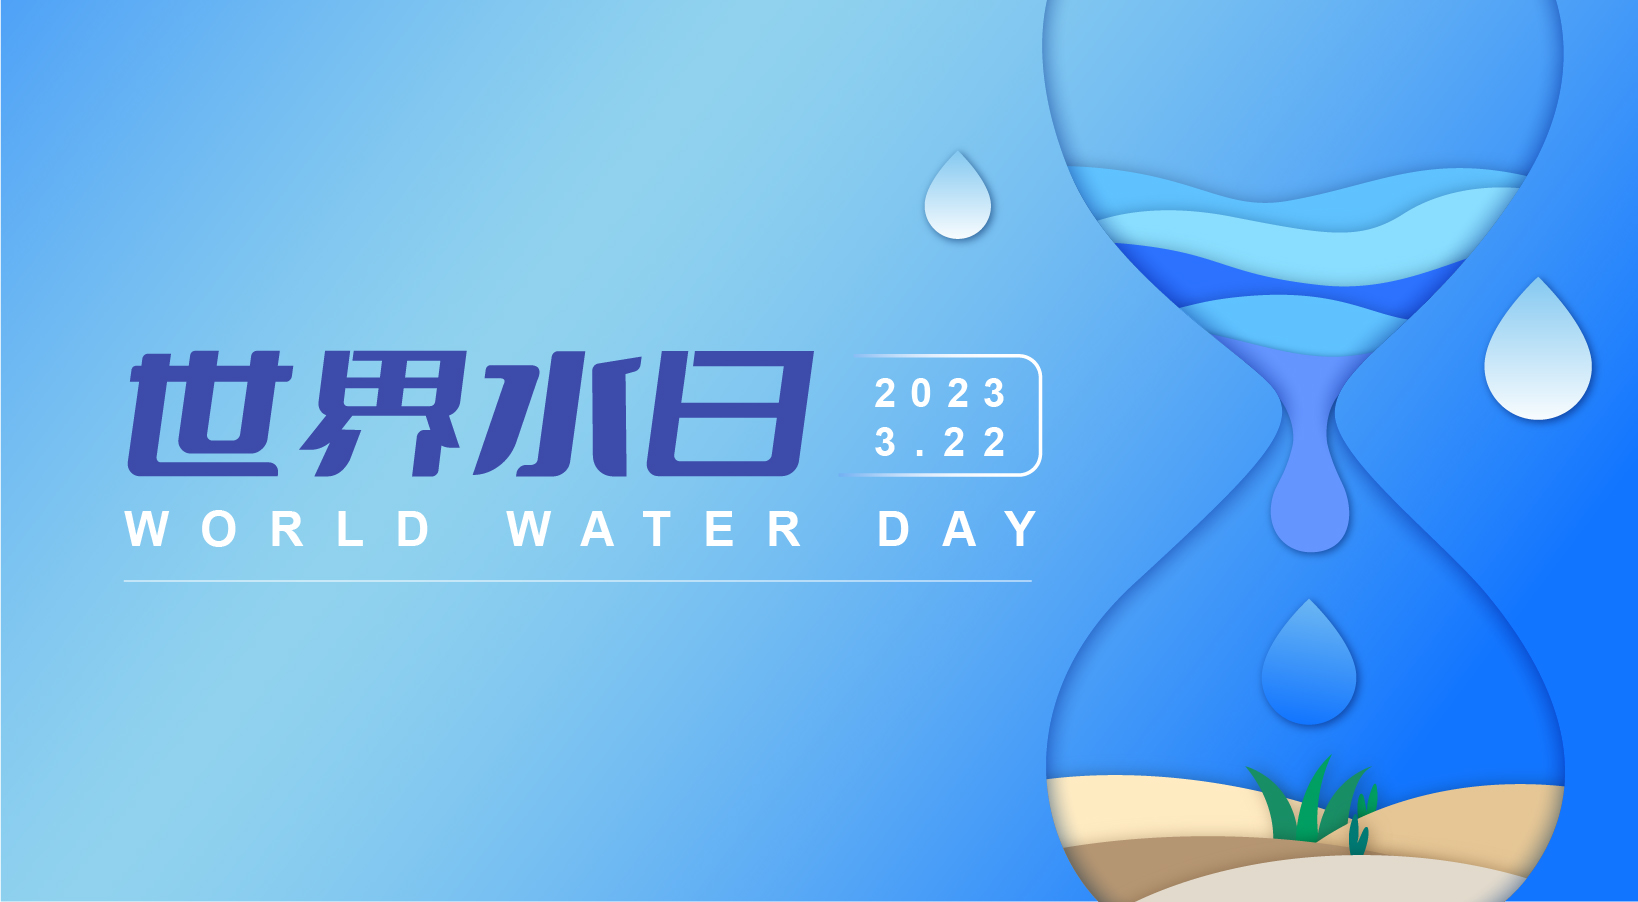  2023年世界水日